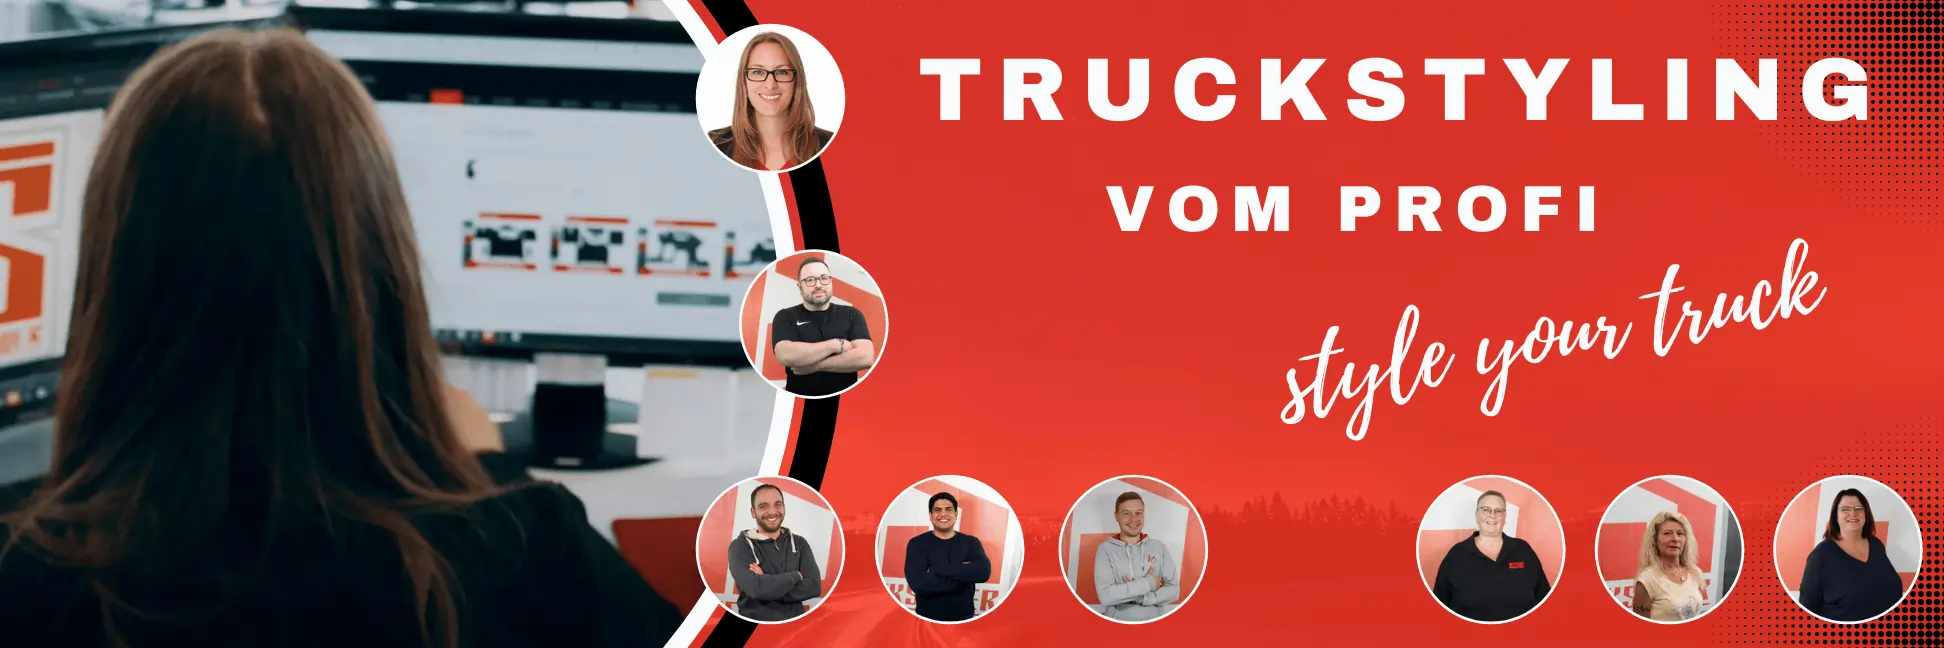 Truckstyler team